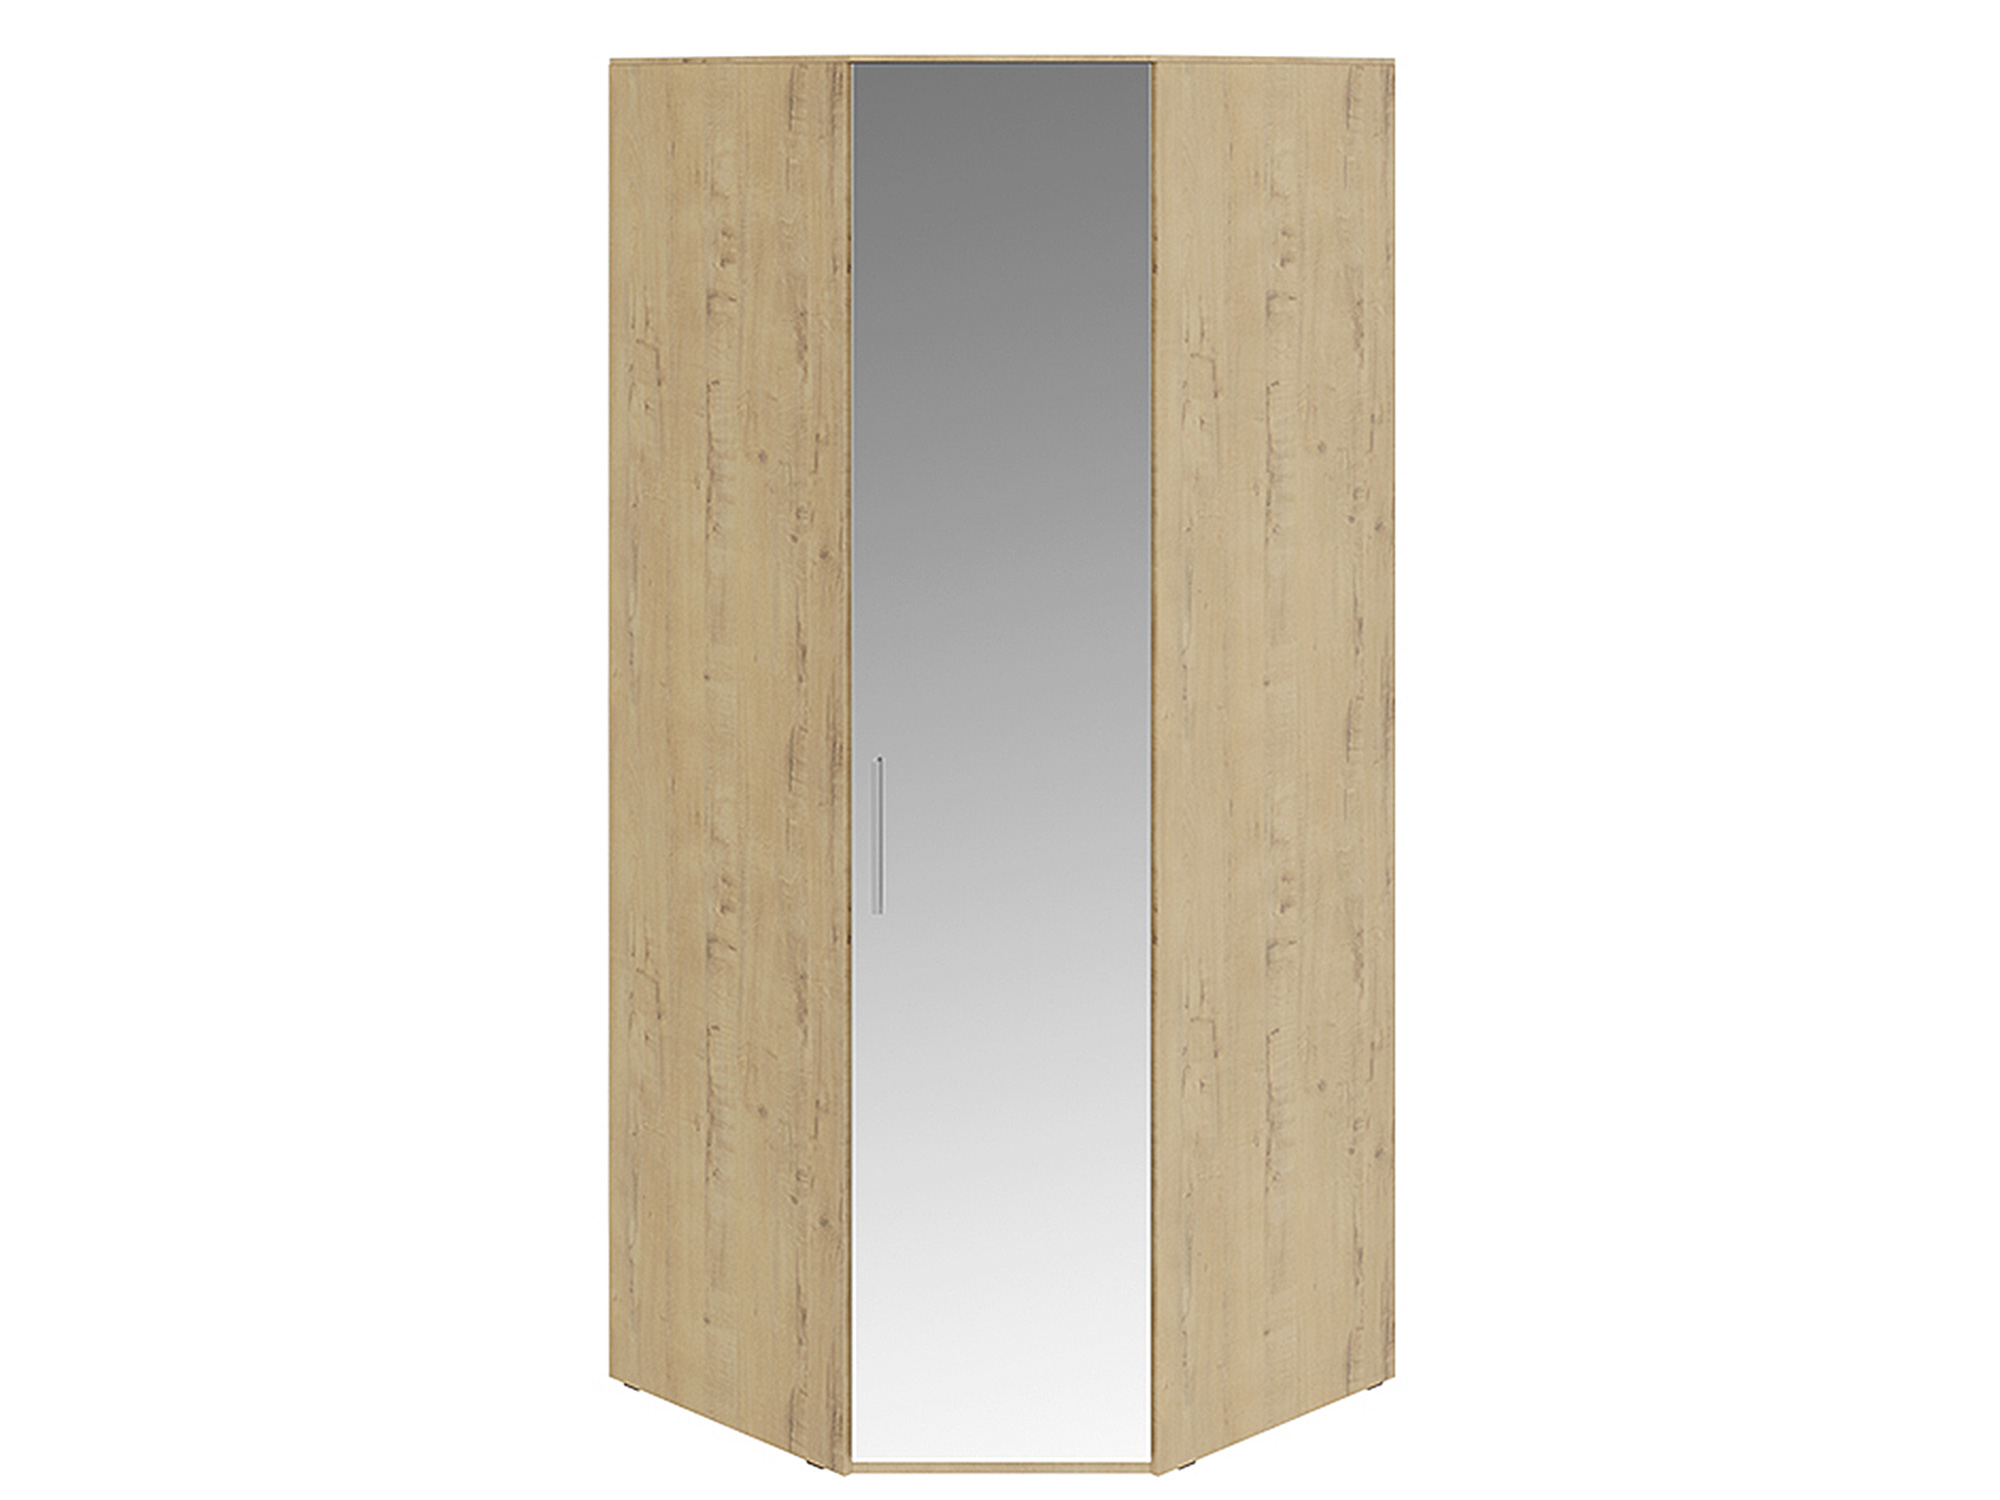 Шкаф угловой с 1 зеркальной дверью правый Николь Зеркало, , Бежевый, МДФ, ЛДСП шкаф угловой с 1 зеркальной дверью левый николь зеркало бежевый мдф лдсп